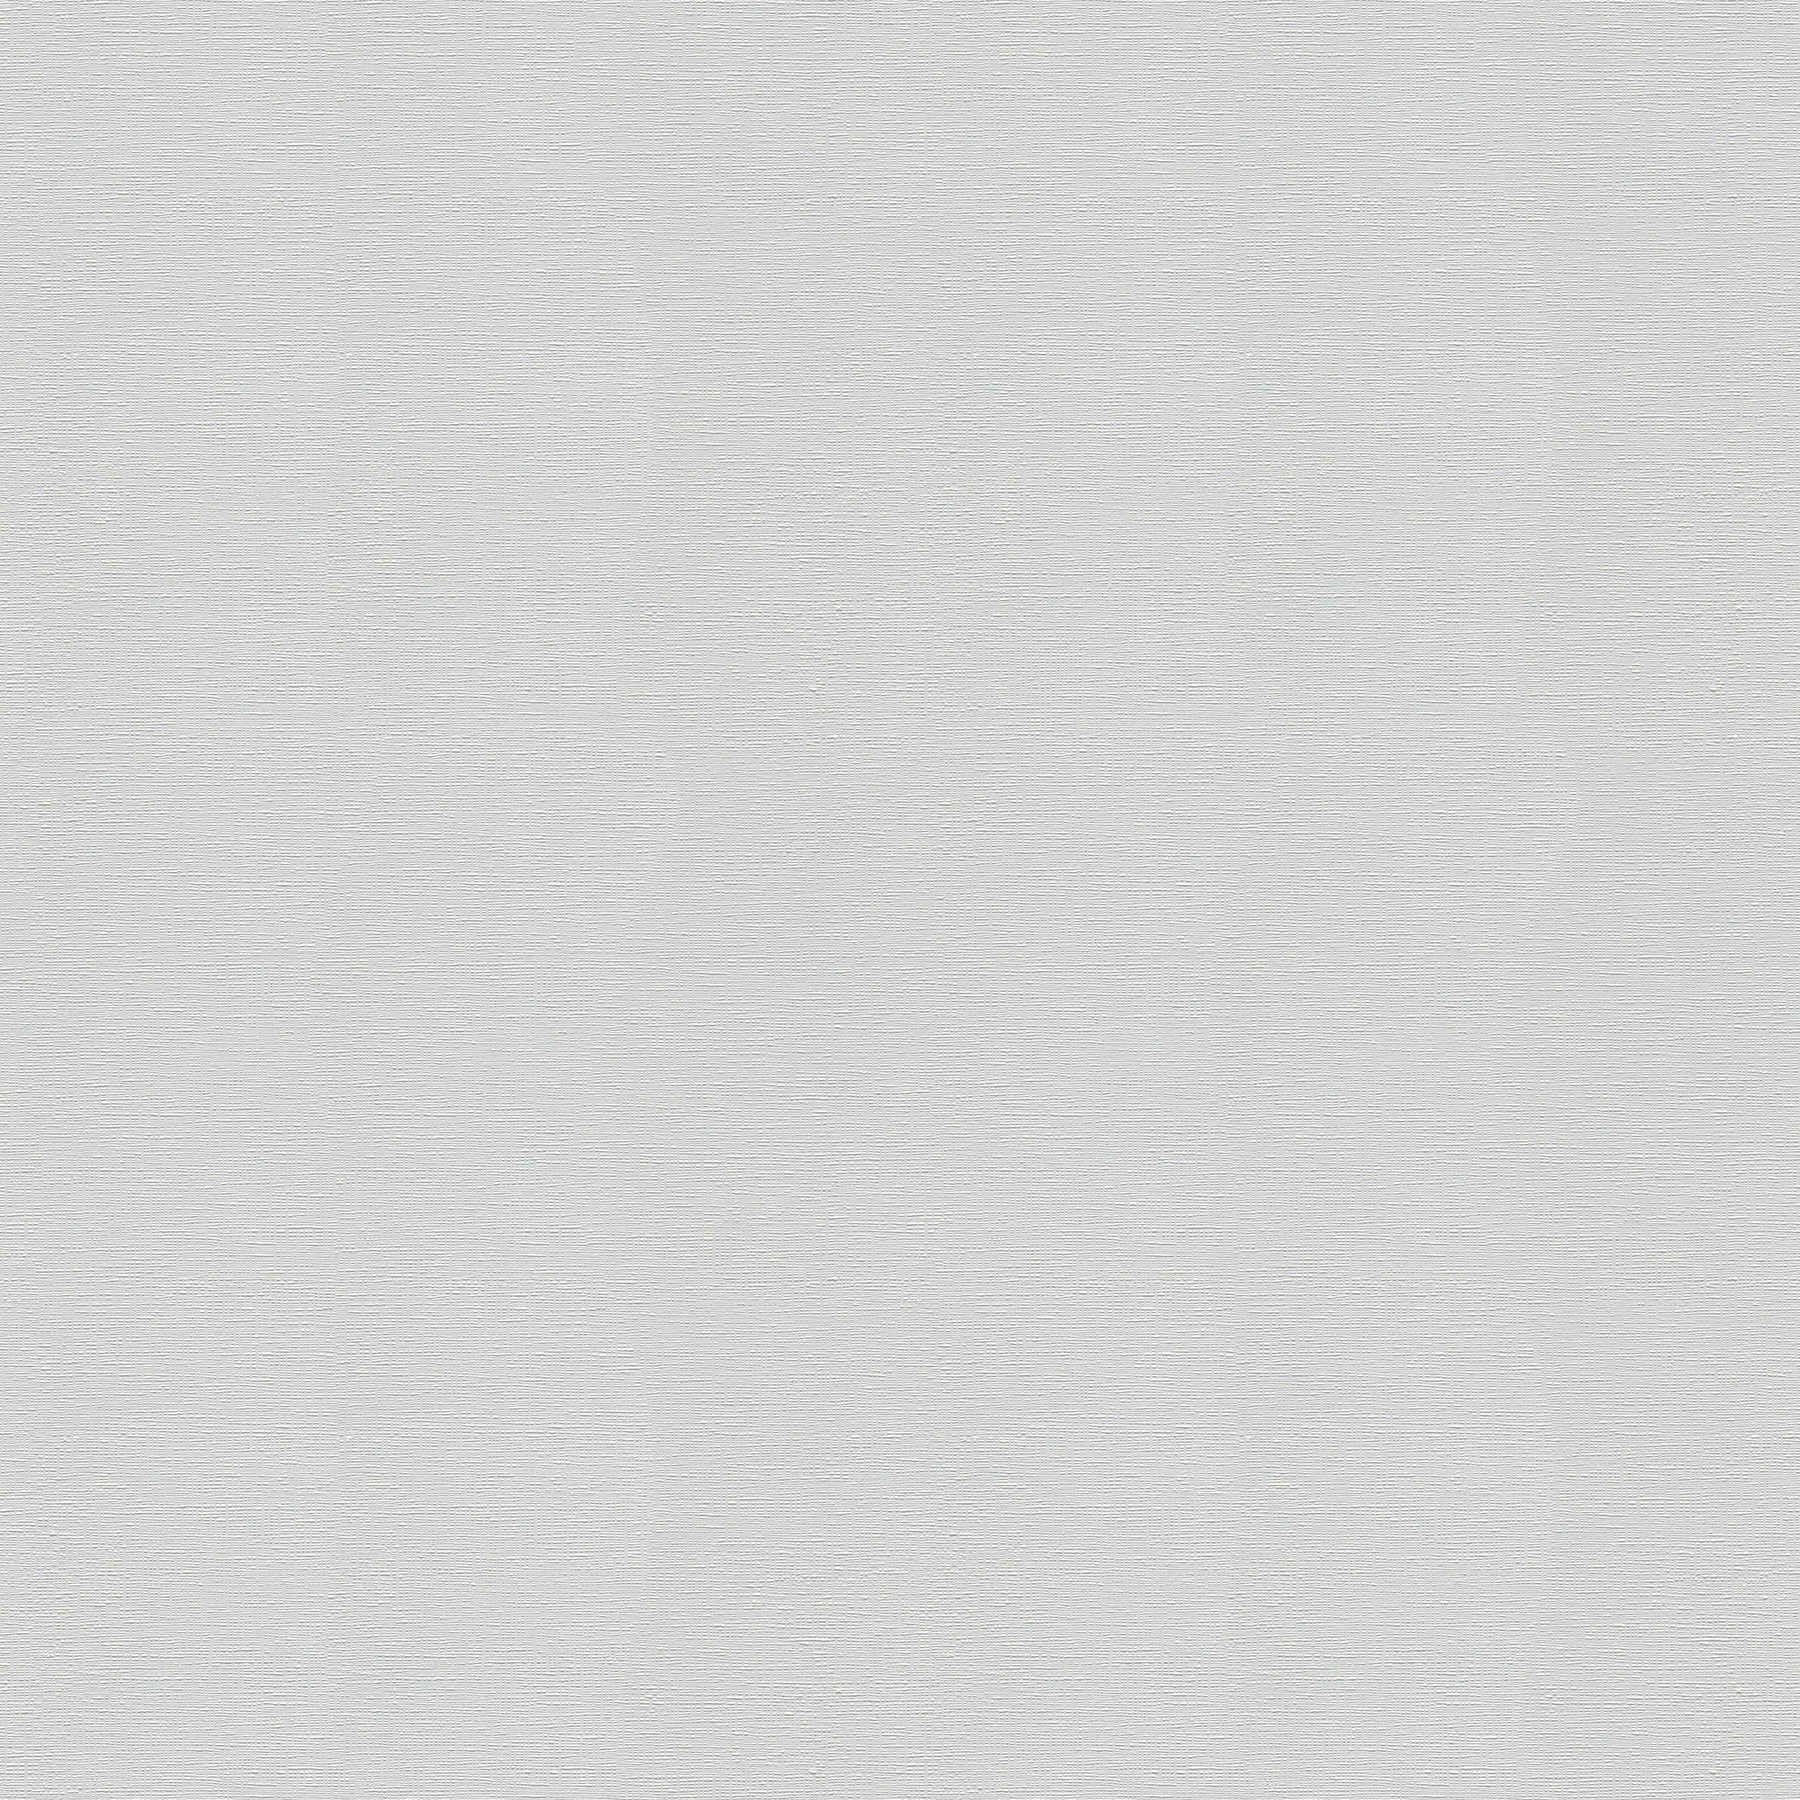 Carta da parati monocromatica grigio chiaro, opaca con superficie testurizzata
